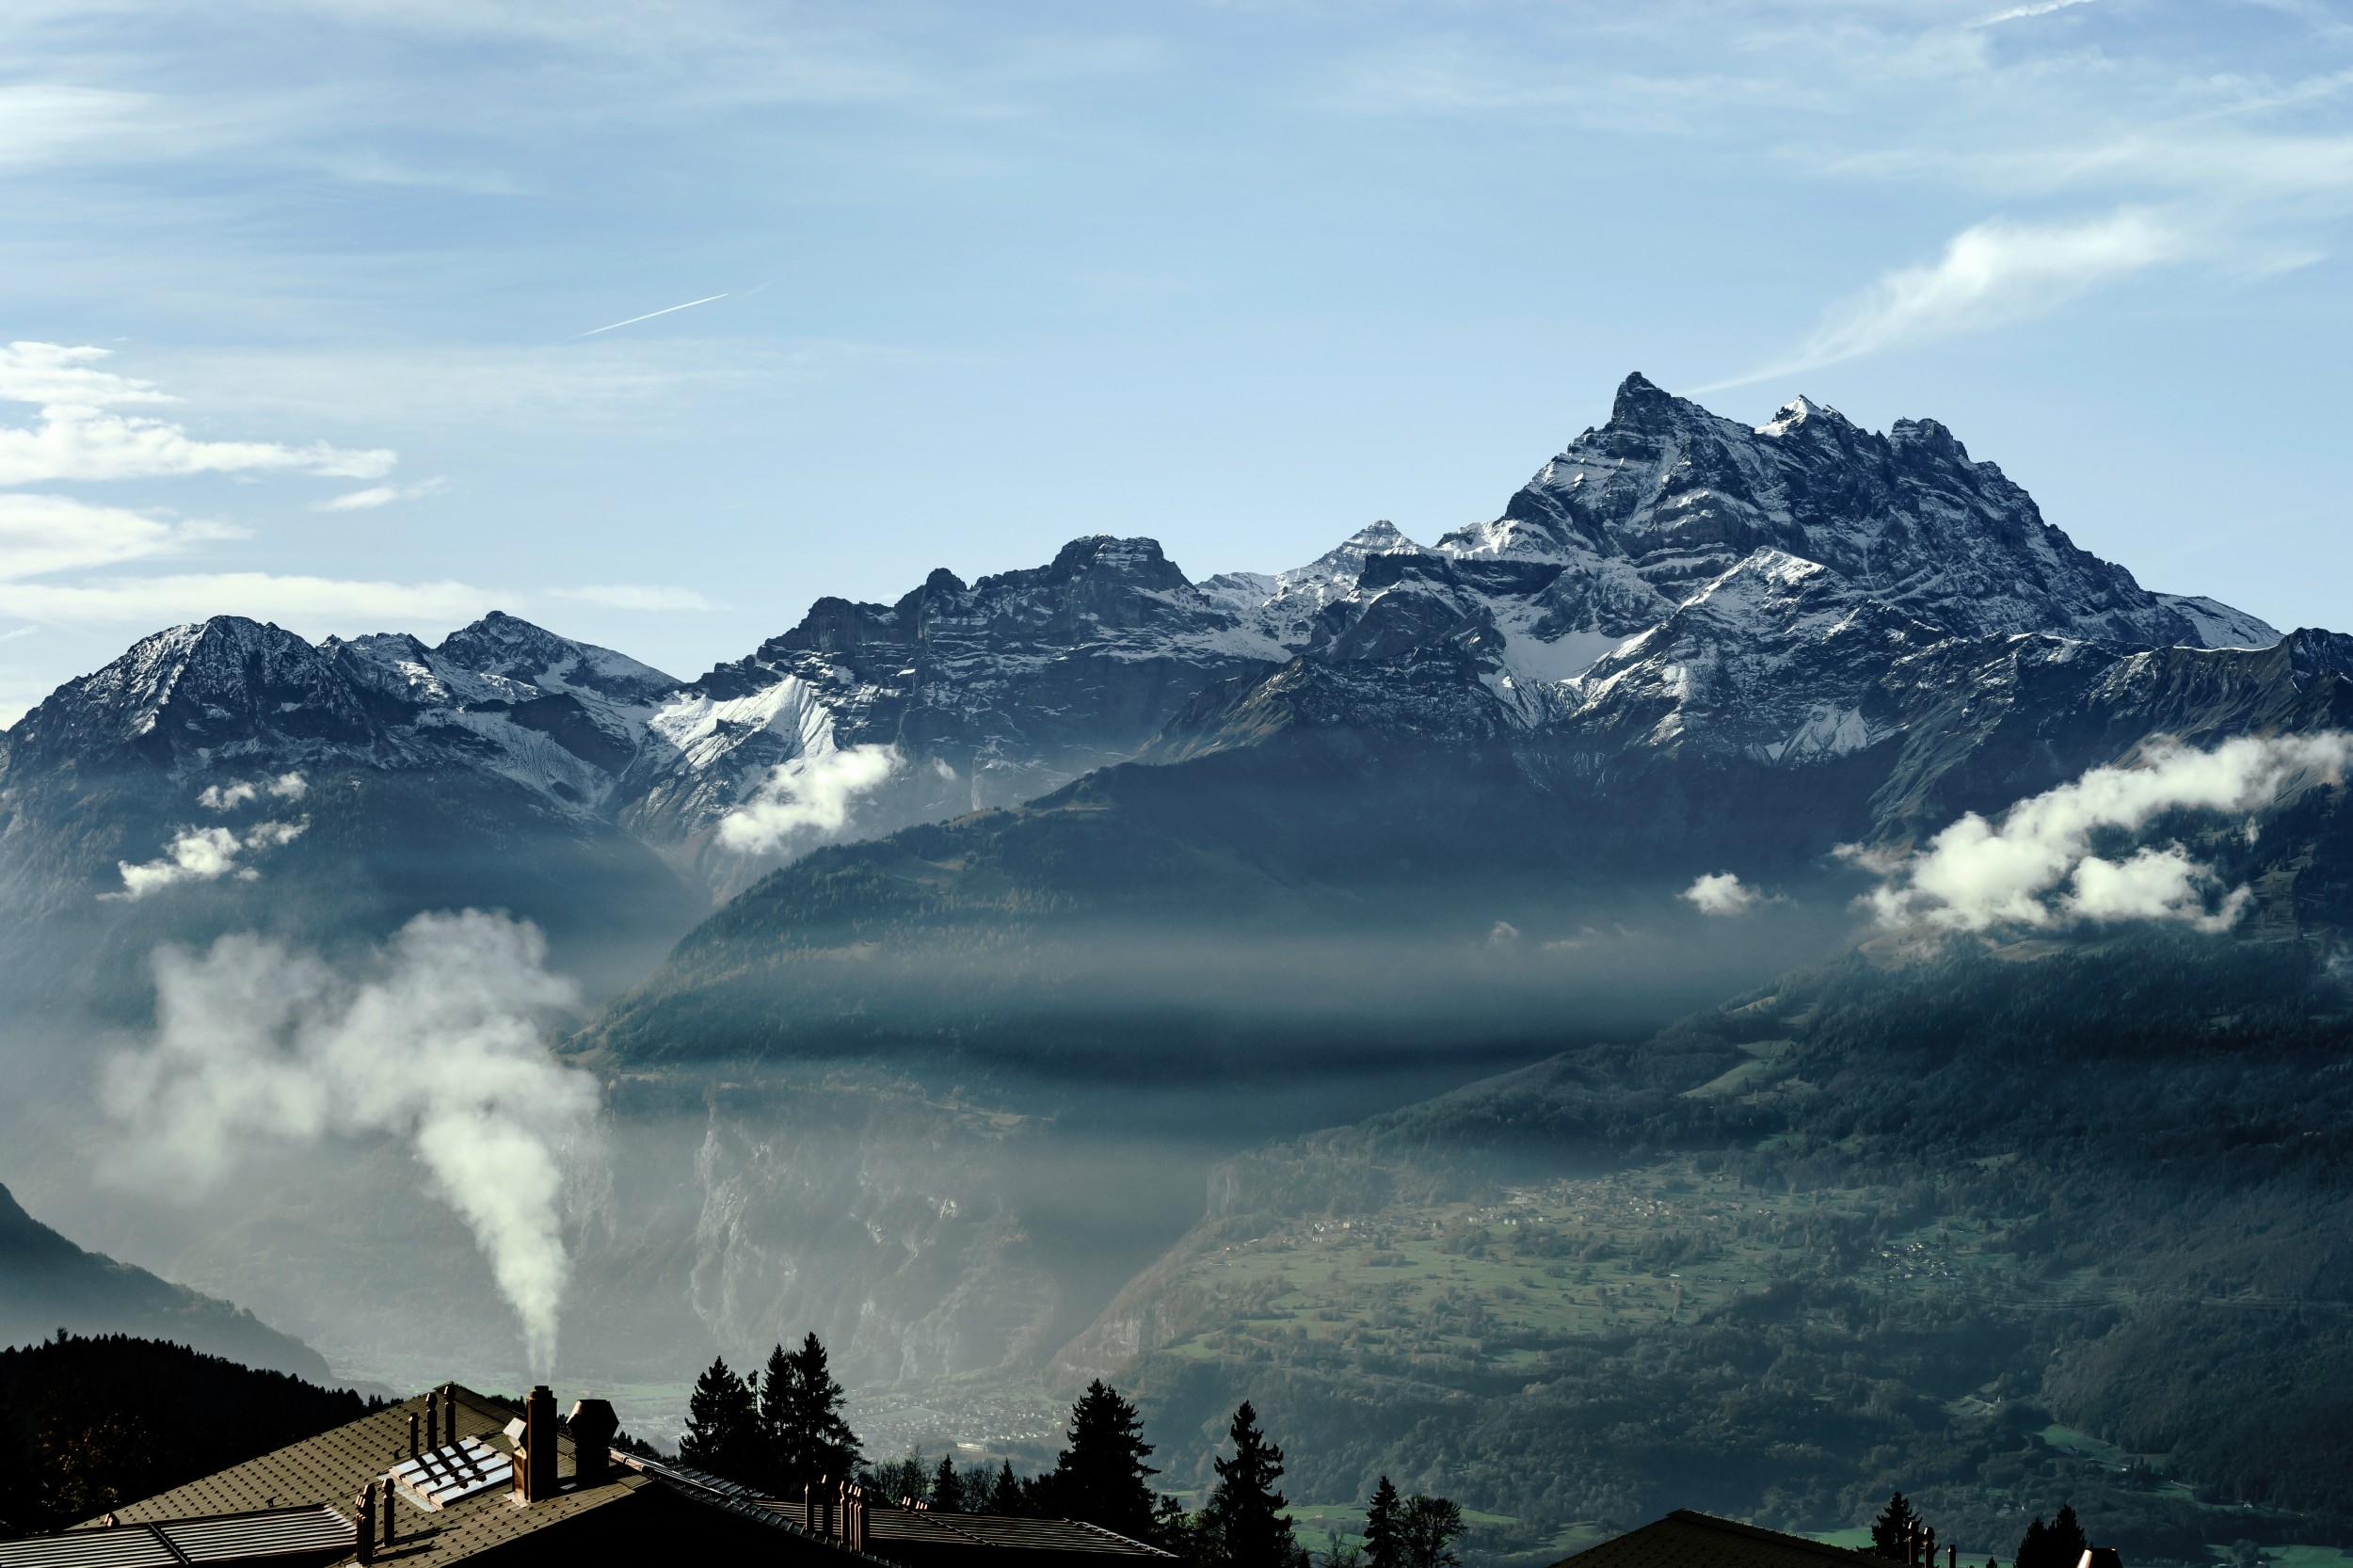 Holzheizungen können in Alpentälern für eine erhebliche Belastung der Luftqualität sorgen.